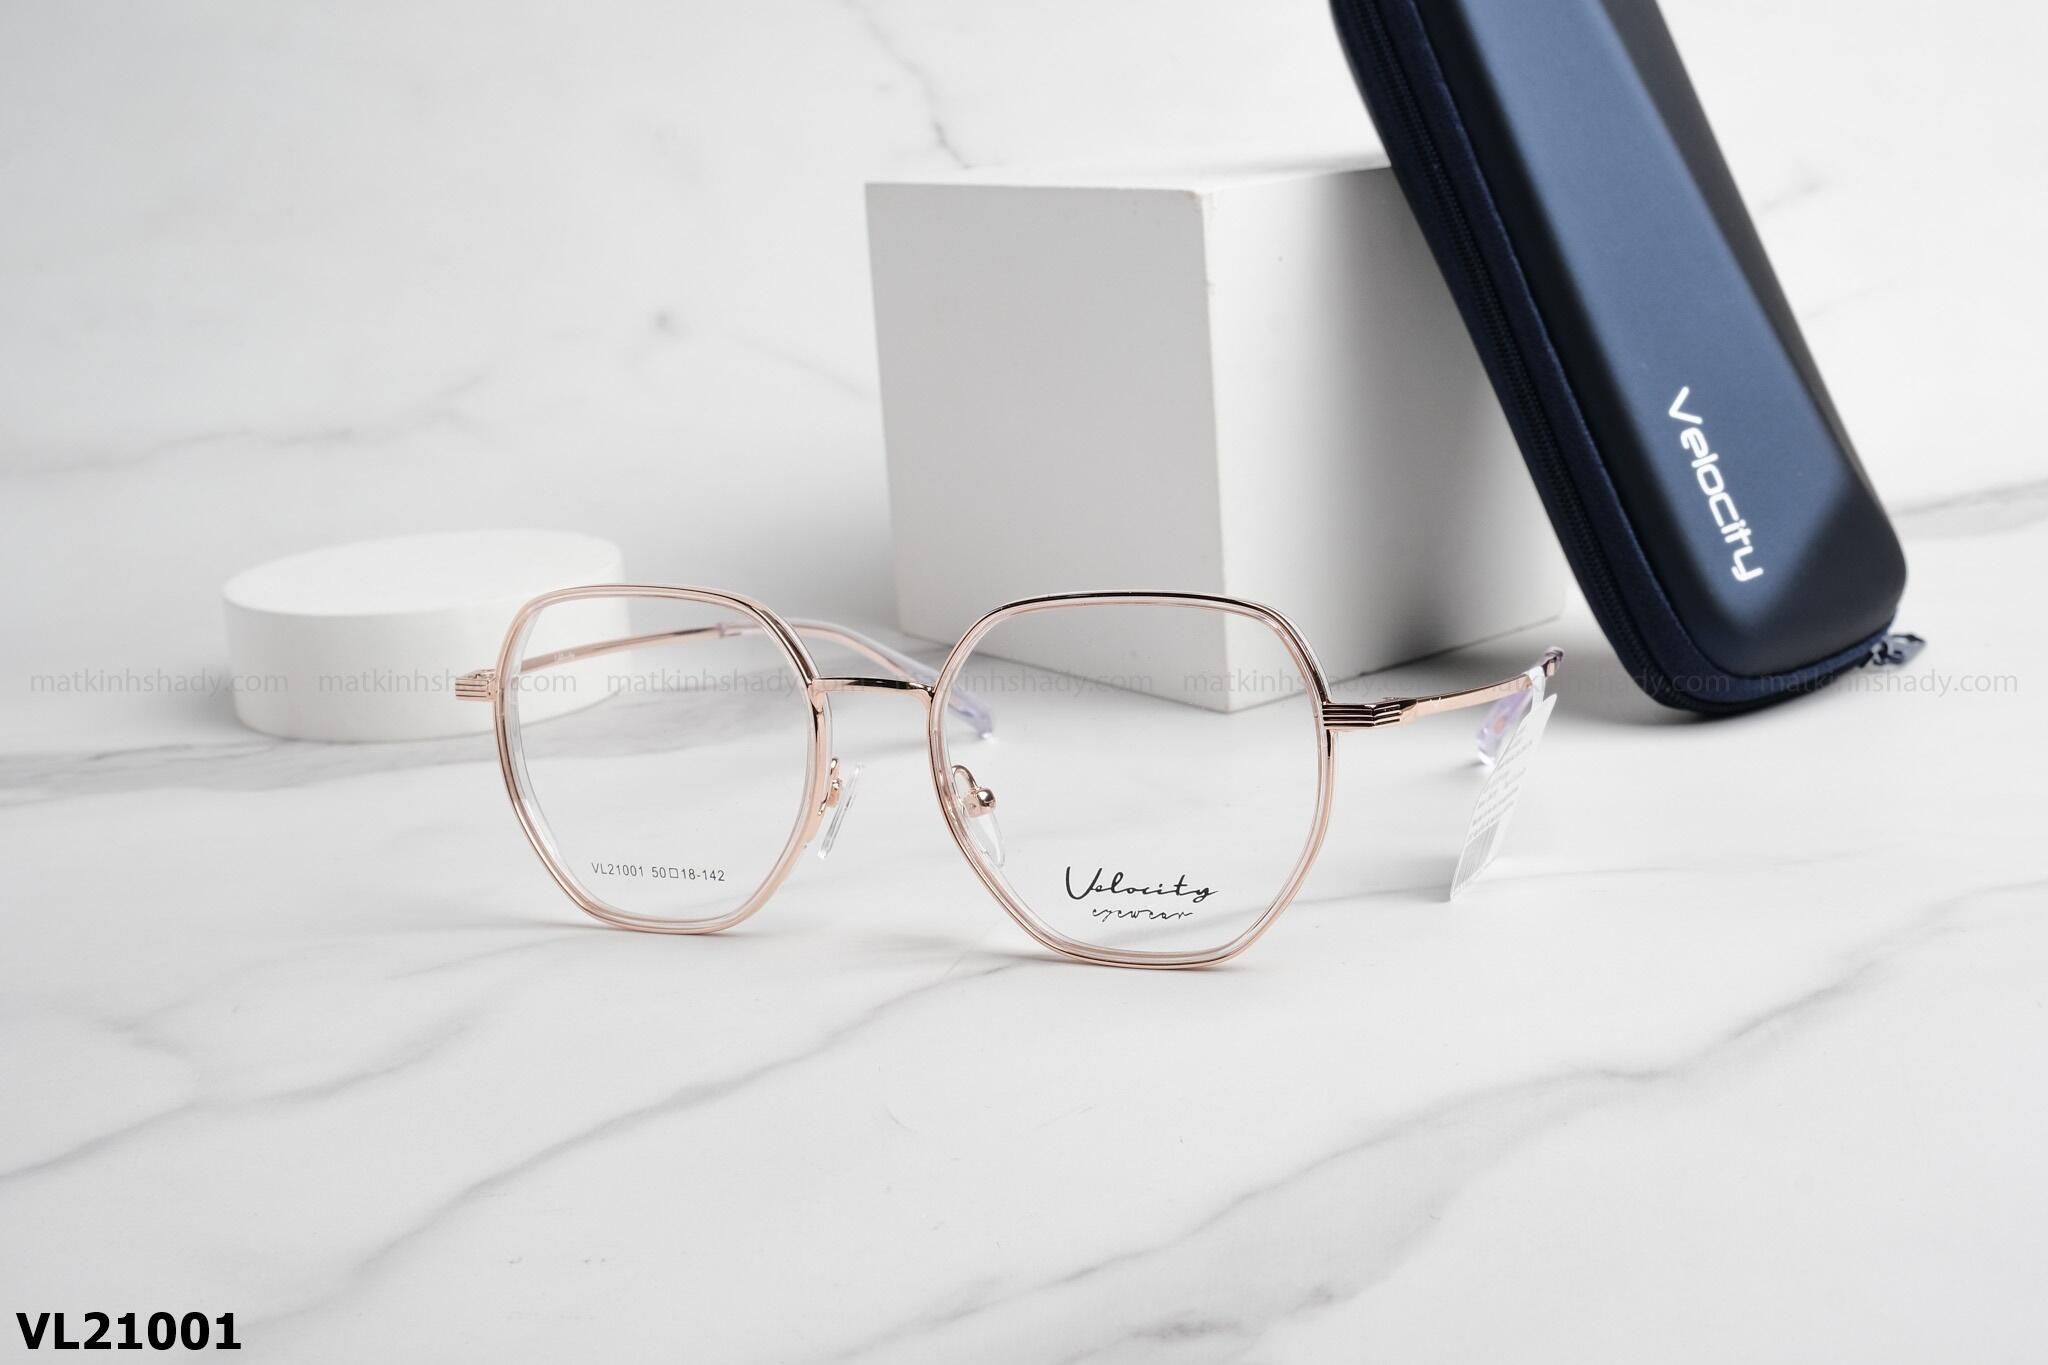  Velocity Eyewear - Glasses - VL21001 